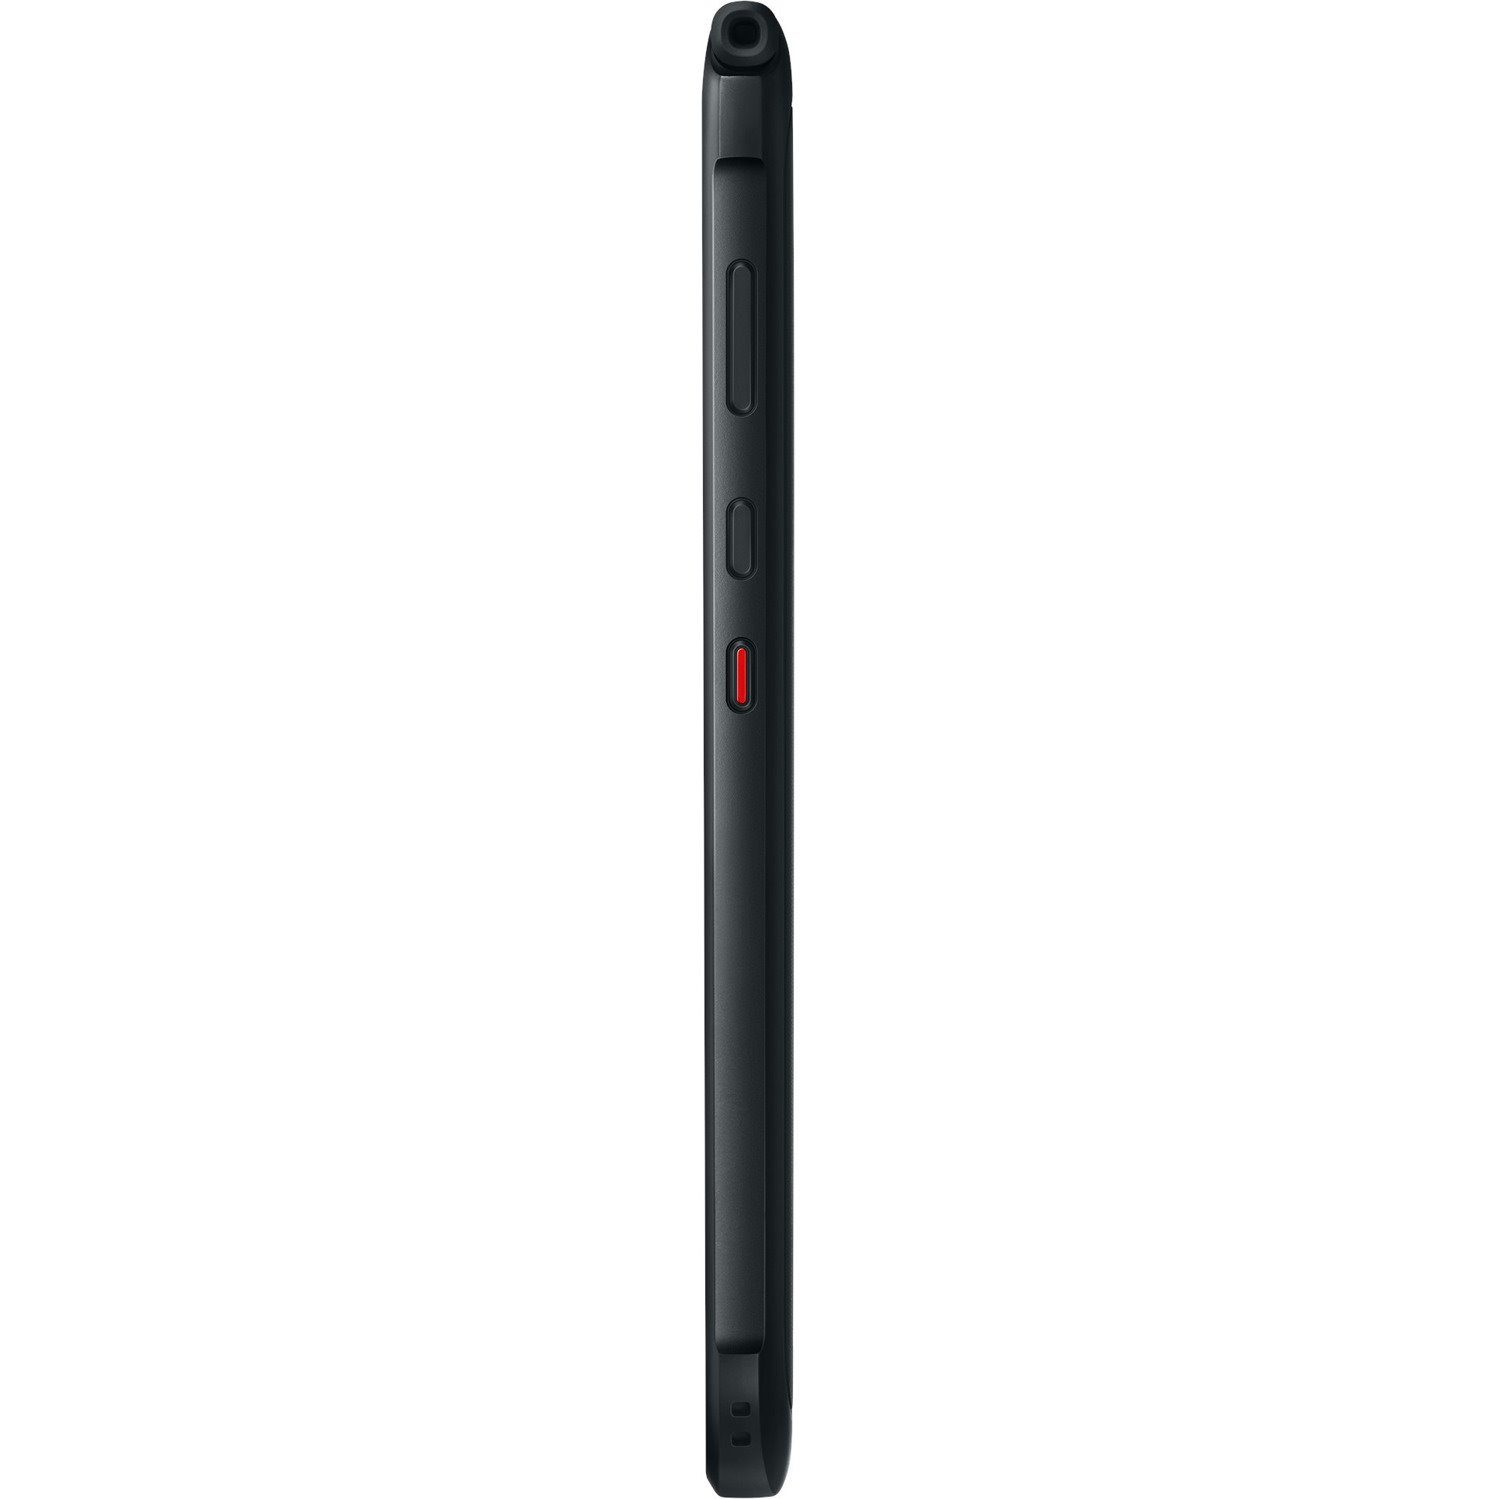 Samsung Galaxy Tab Active3 SM-T570 Rugged Tablet - 8" WUXGA - Samsung Exynos 9810 - 4 GB - 64 GB Storage - Black